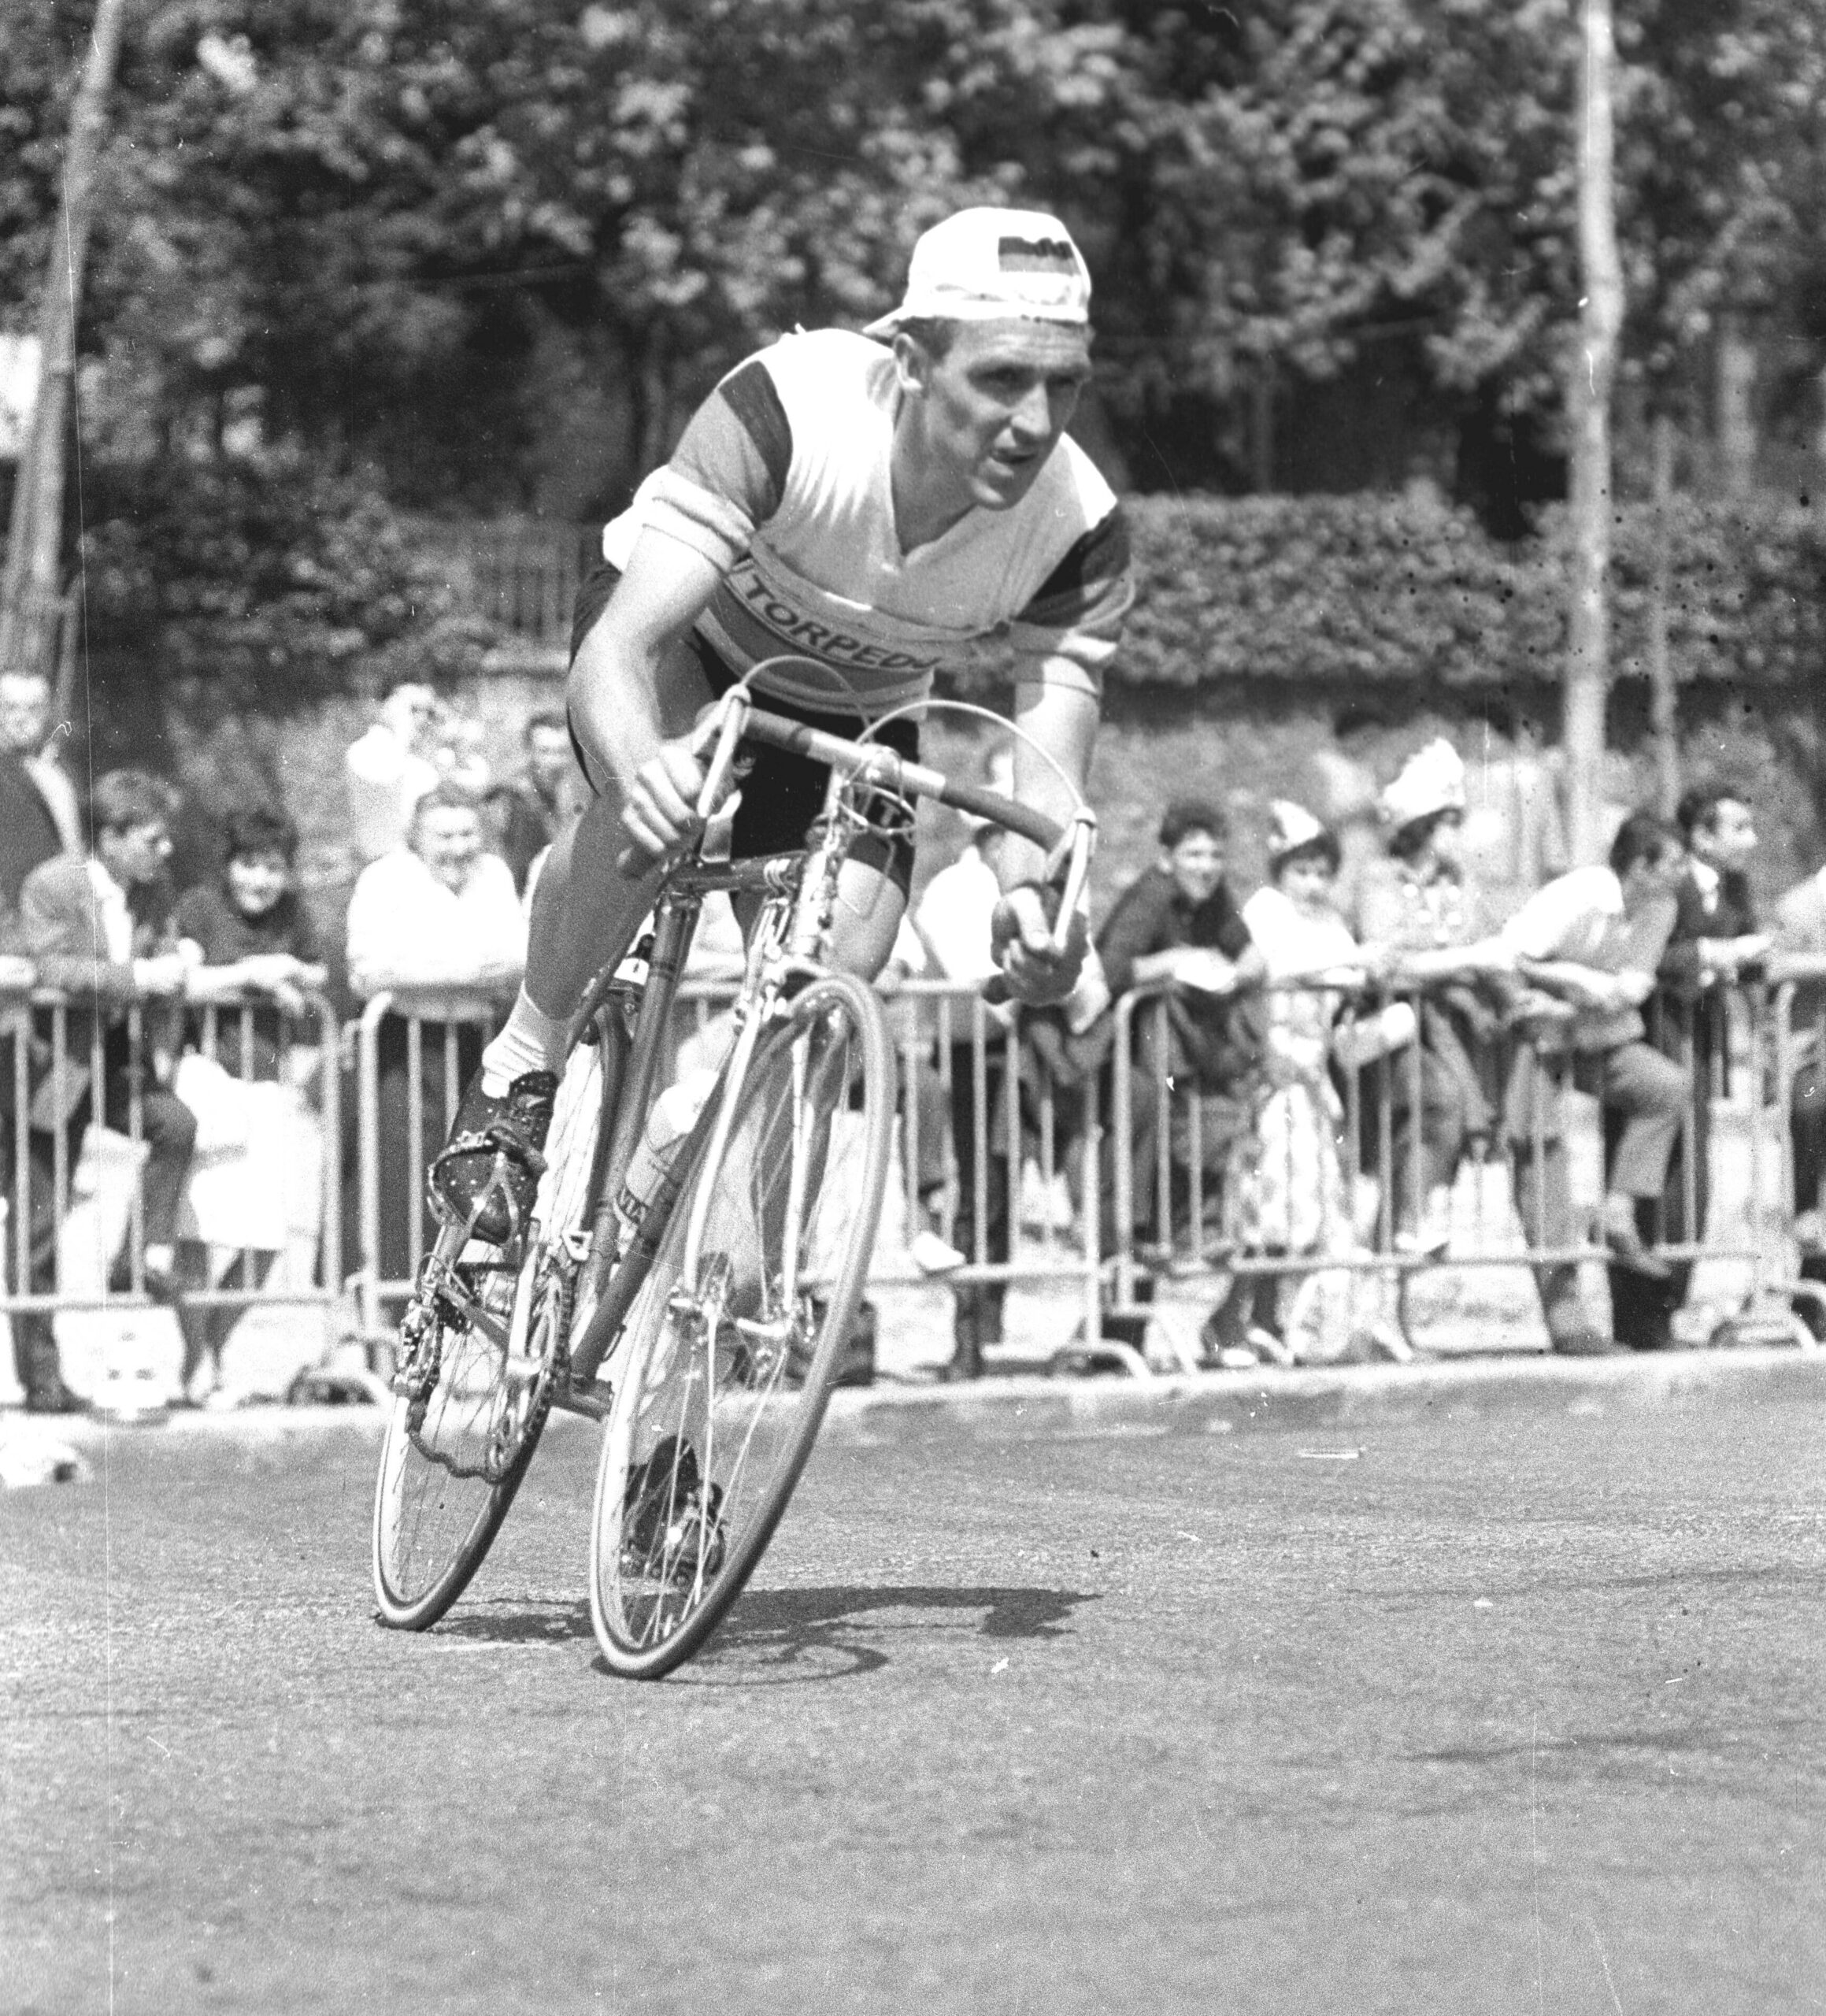 Schwarz-Weiss-Fotografie von Rad-Legende Hennes Junkermann beim Rennen